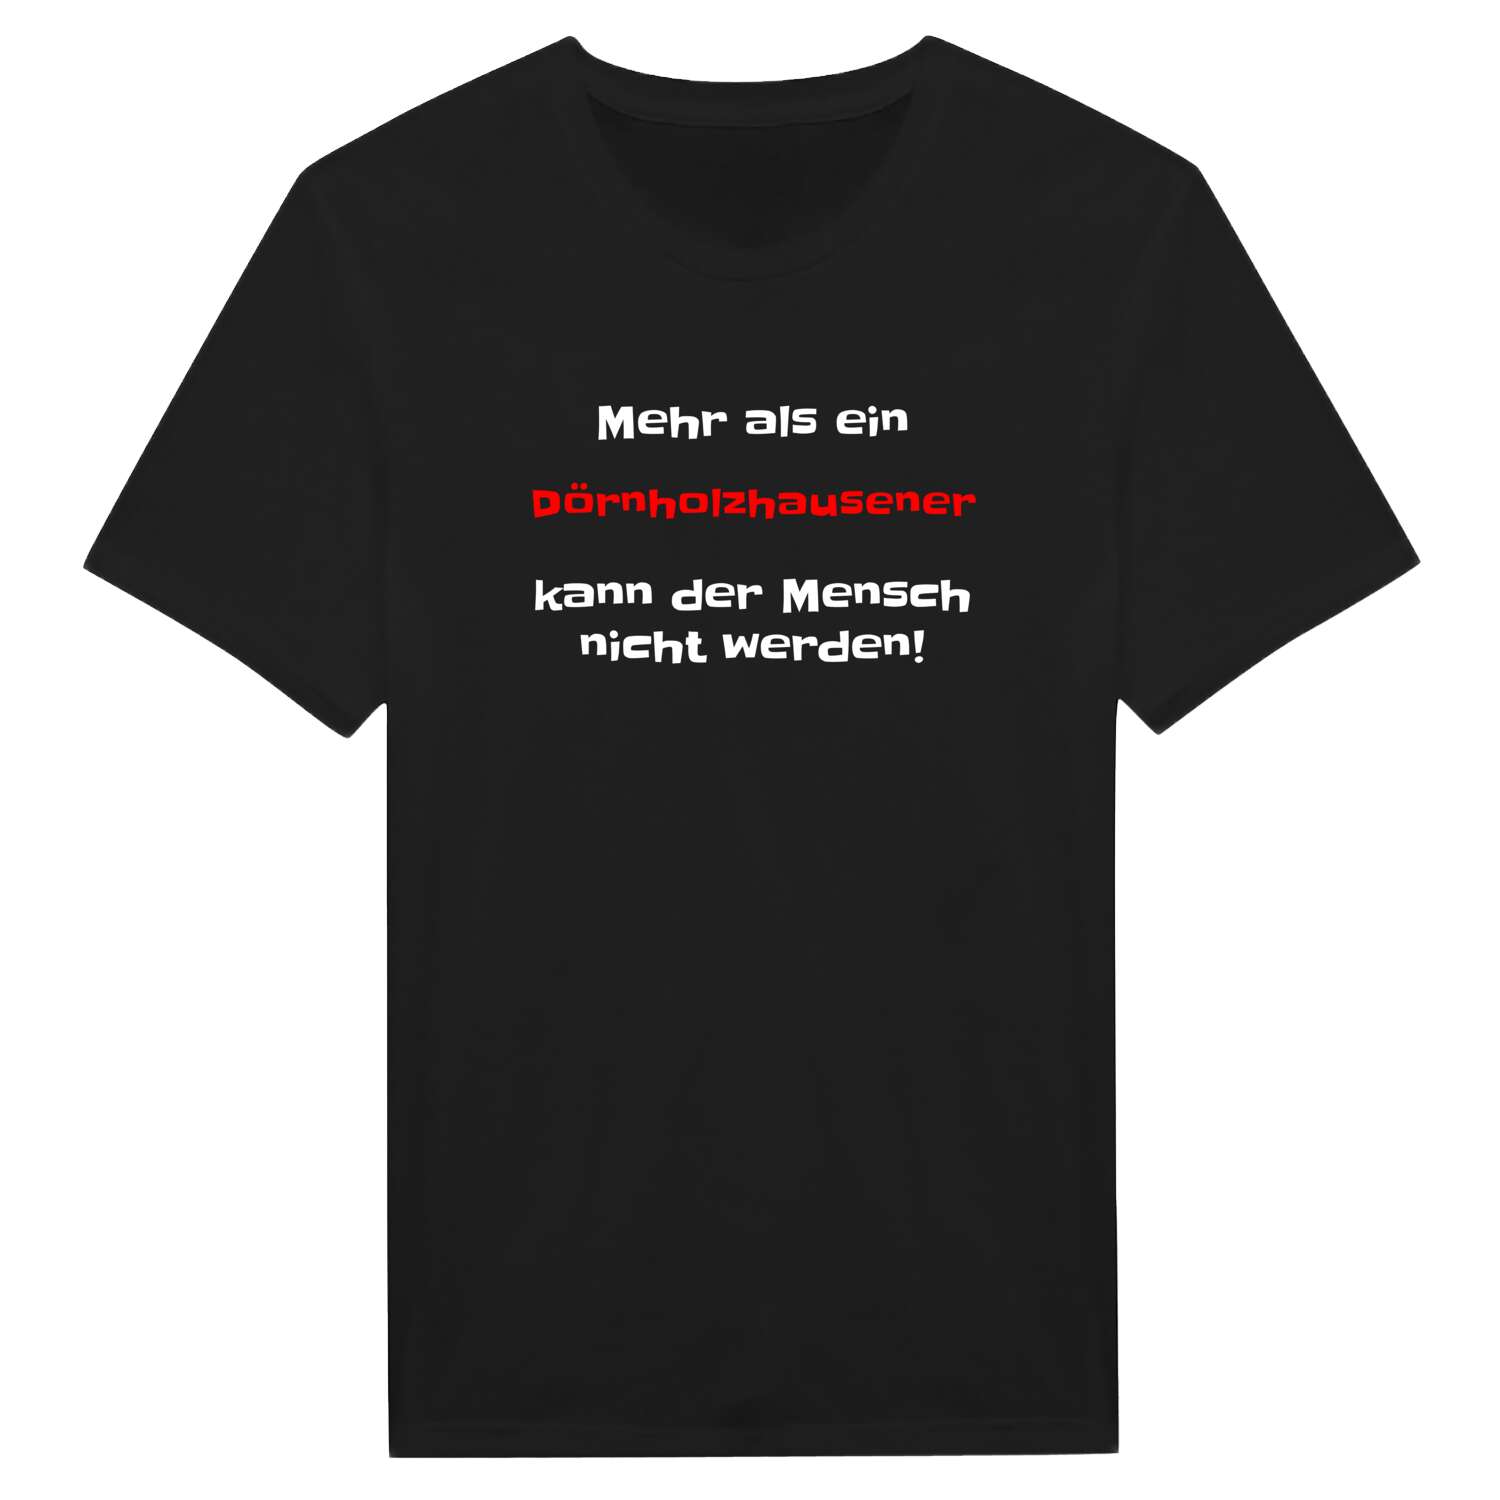 Dörnholzhausen T-Shirt »Mehr als ein«